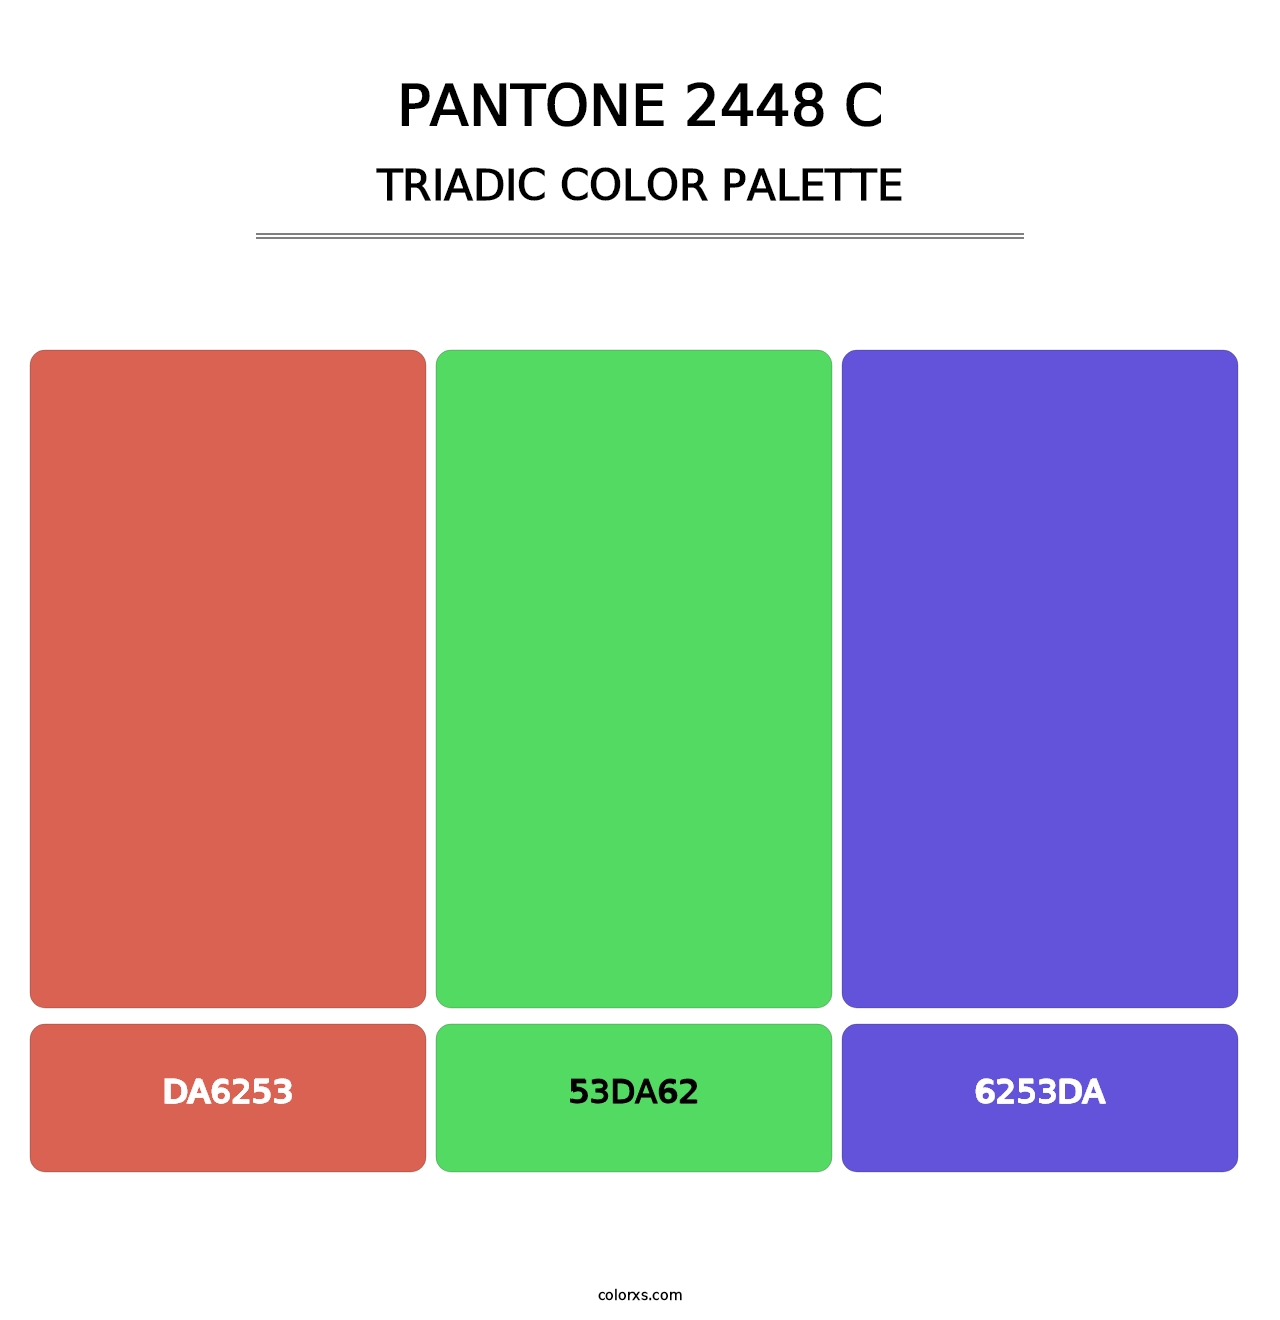 PANTONE 2448 C - Triadic Color Palette